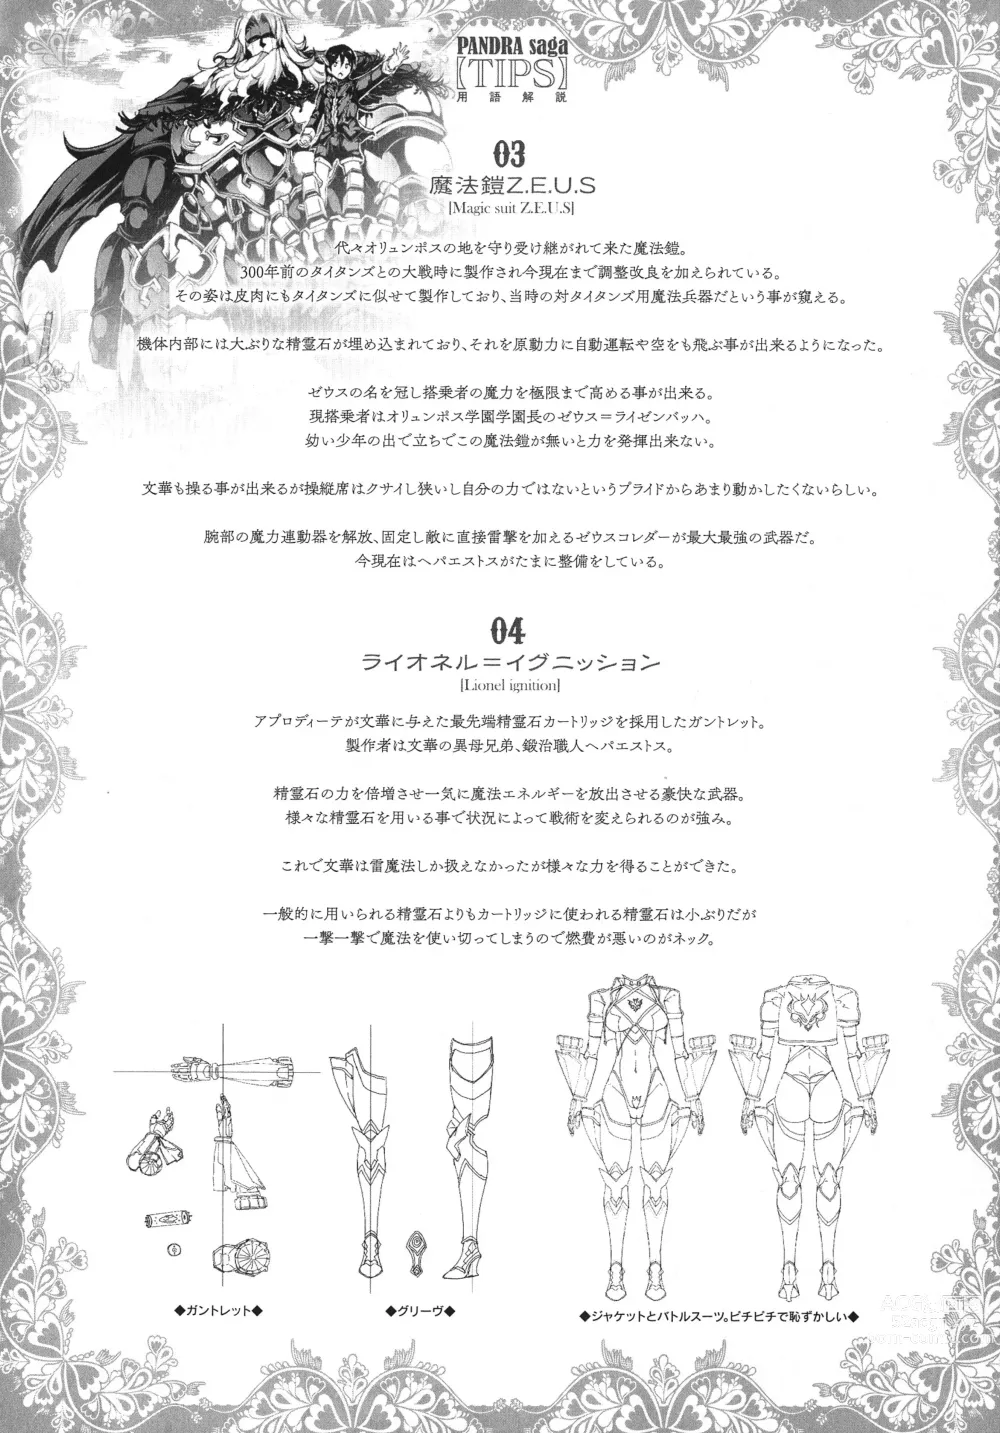 Page 182 of doujinshi Raikou Shinki Igis Magia -PANDRA saga 3rd ignition- Ch. 1-8